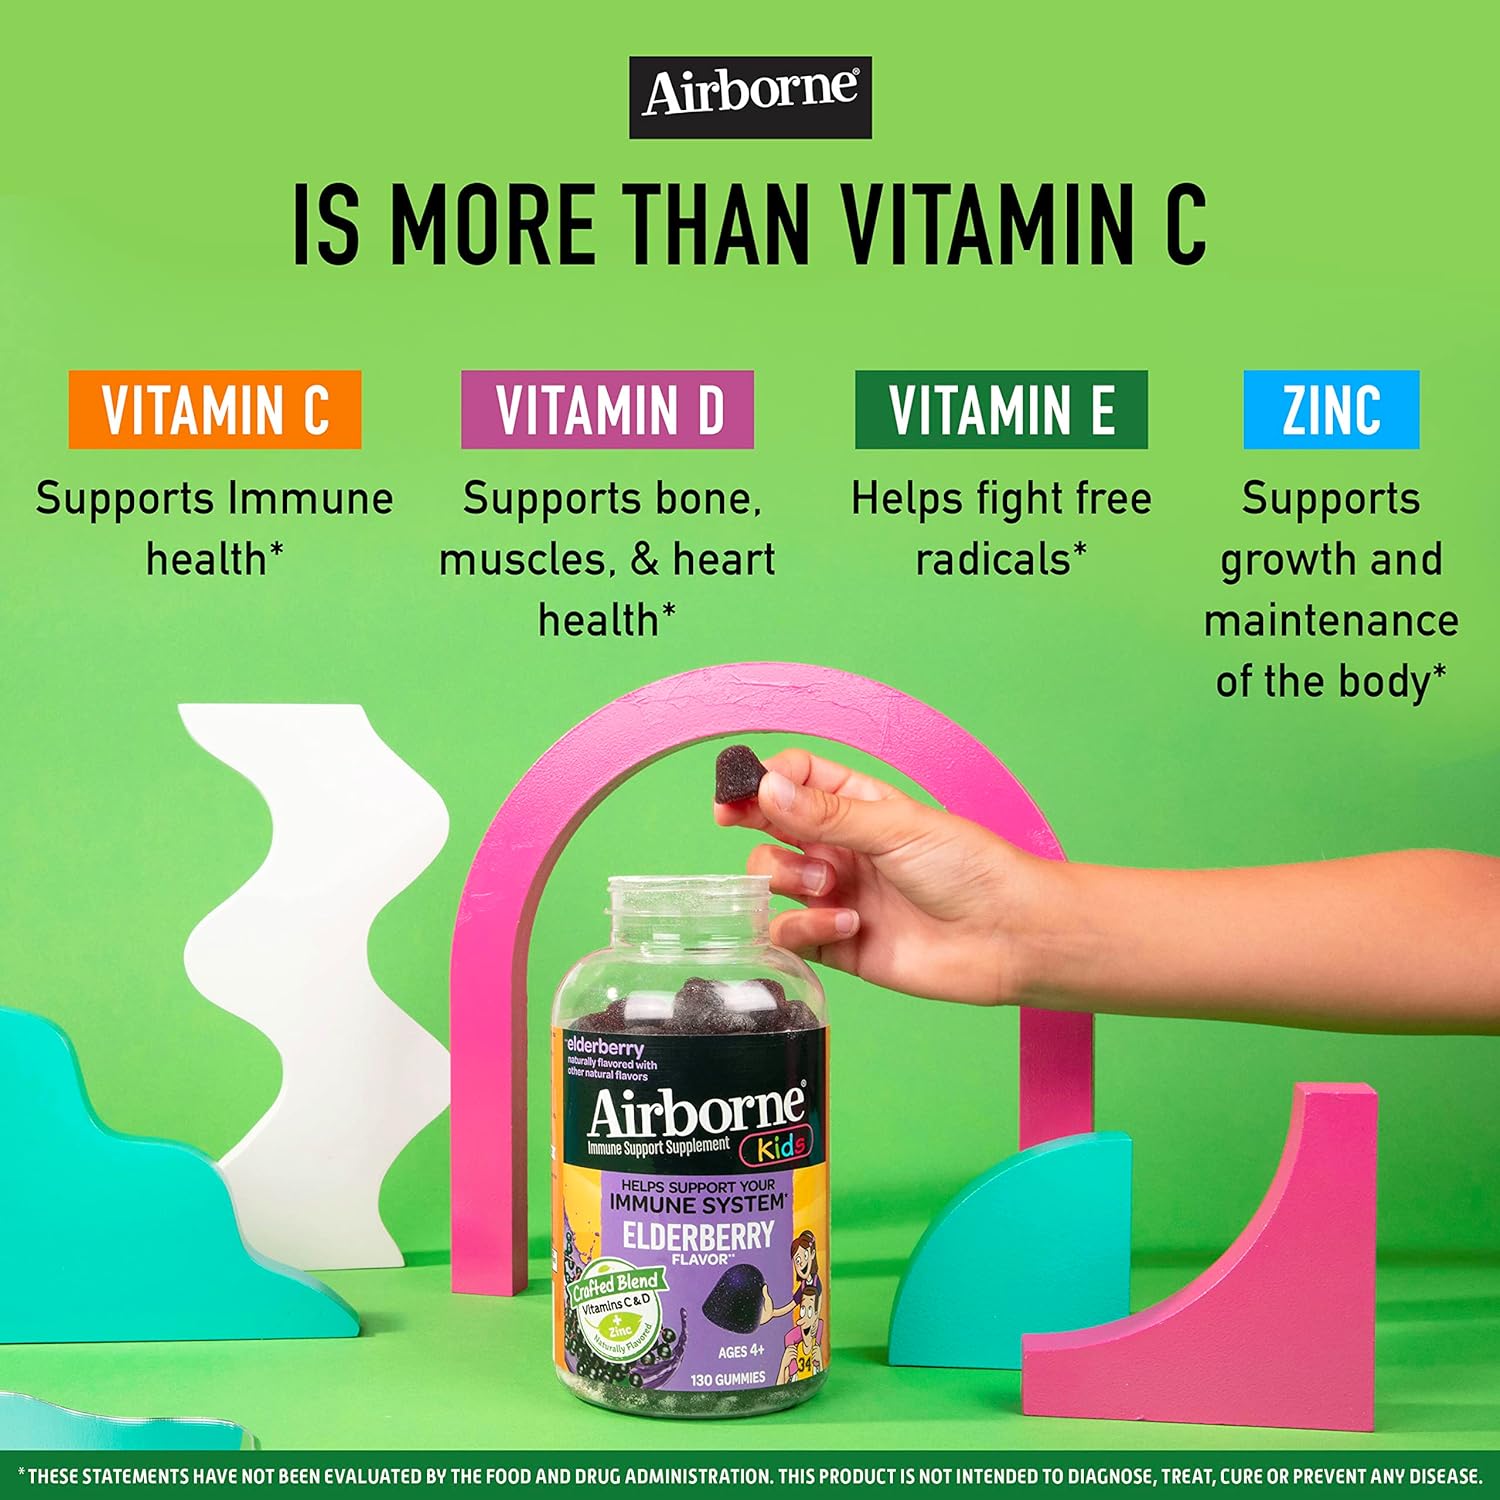 Airborne KIDS Elderberry + Zinc & Vitamin C Gummies, Kids Immune Suppo